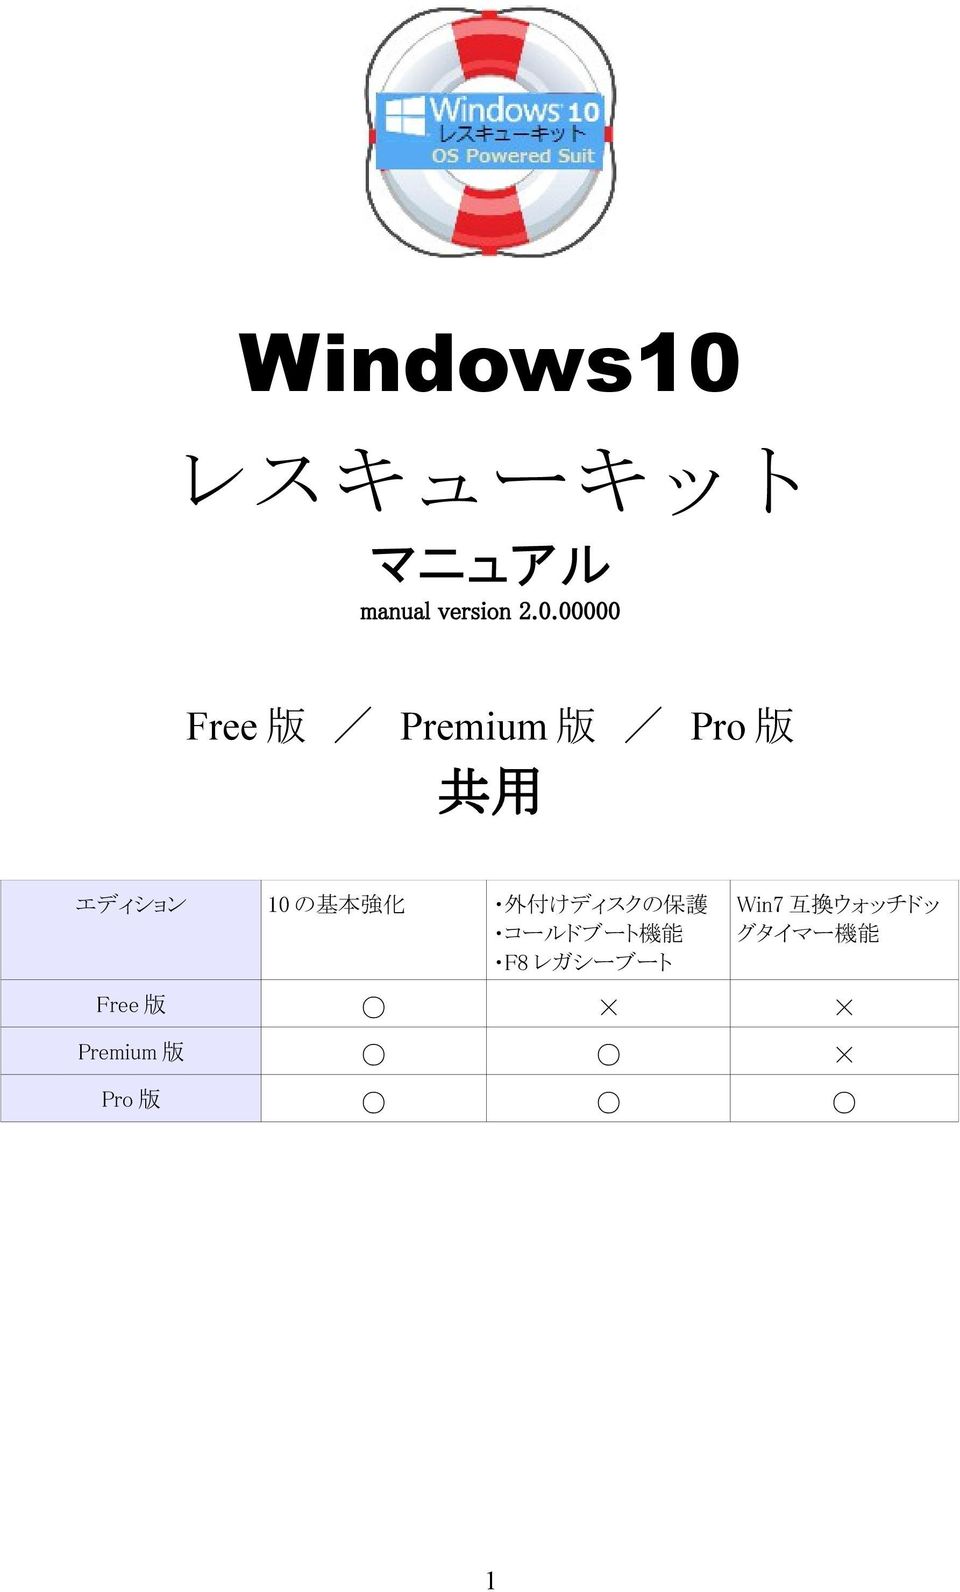 00000 Free 版 / Premium 版 / Pro 版 共 用 エディション 10